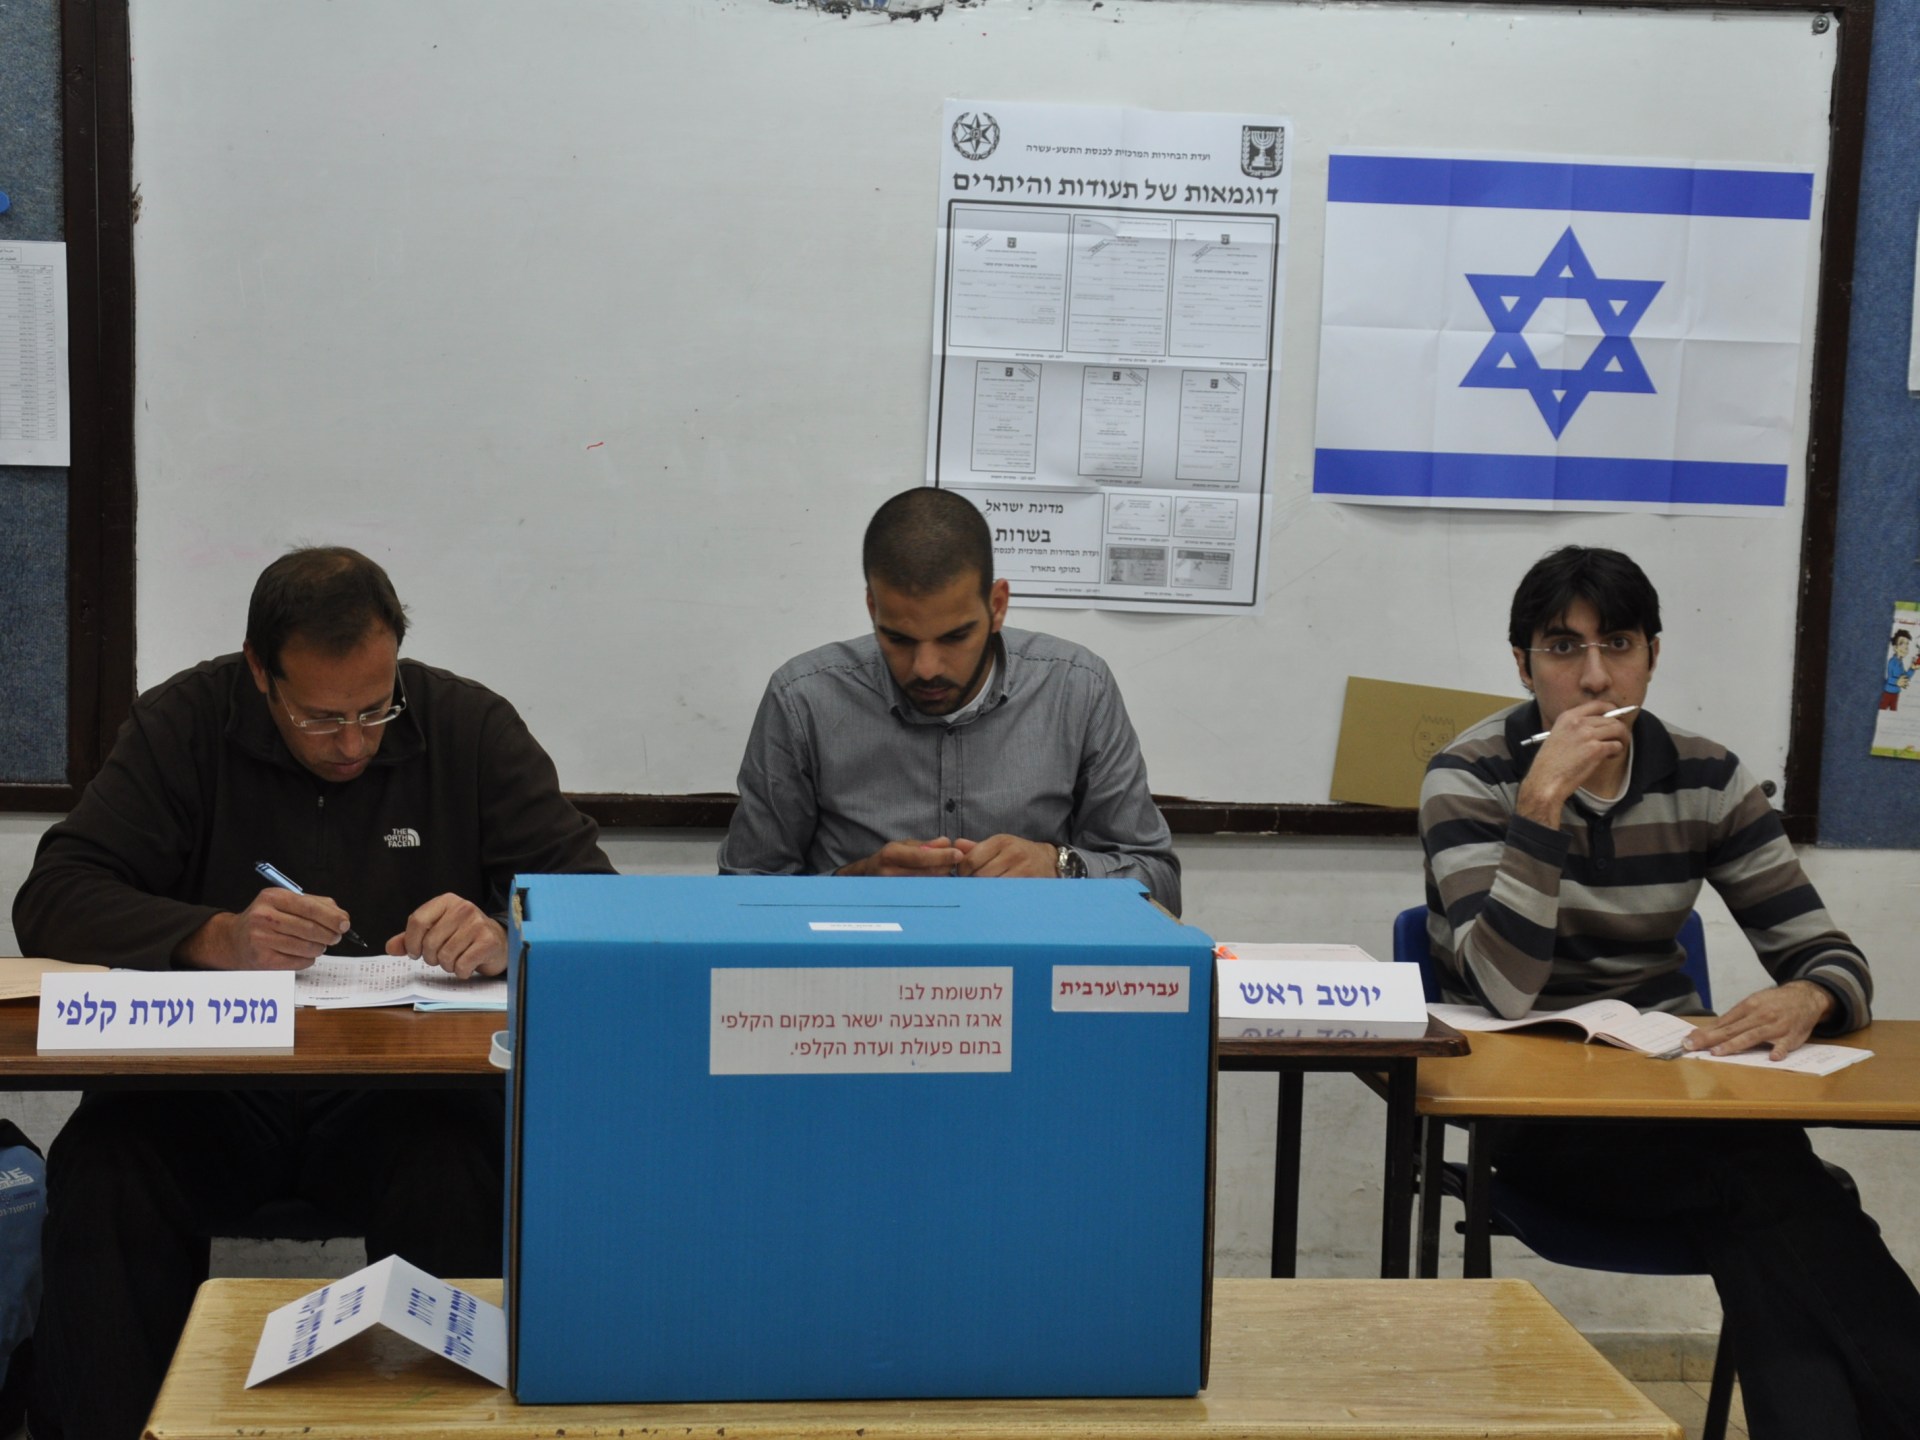 انتخابات الحكم المحلي بإسرائيل تنطلق تحت تداعيات “طوفان الأقصى” | سياسة – البوكس نيوز